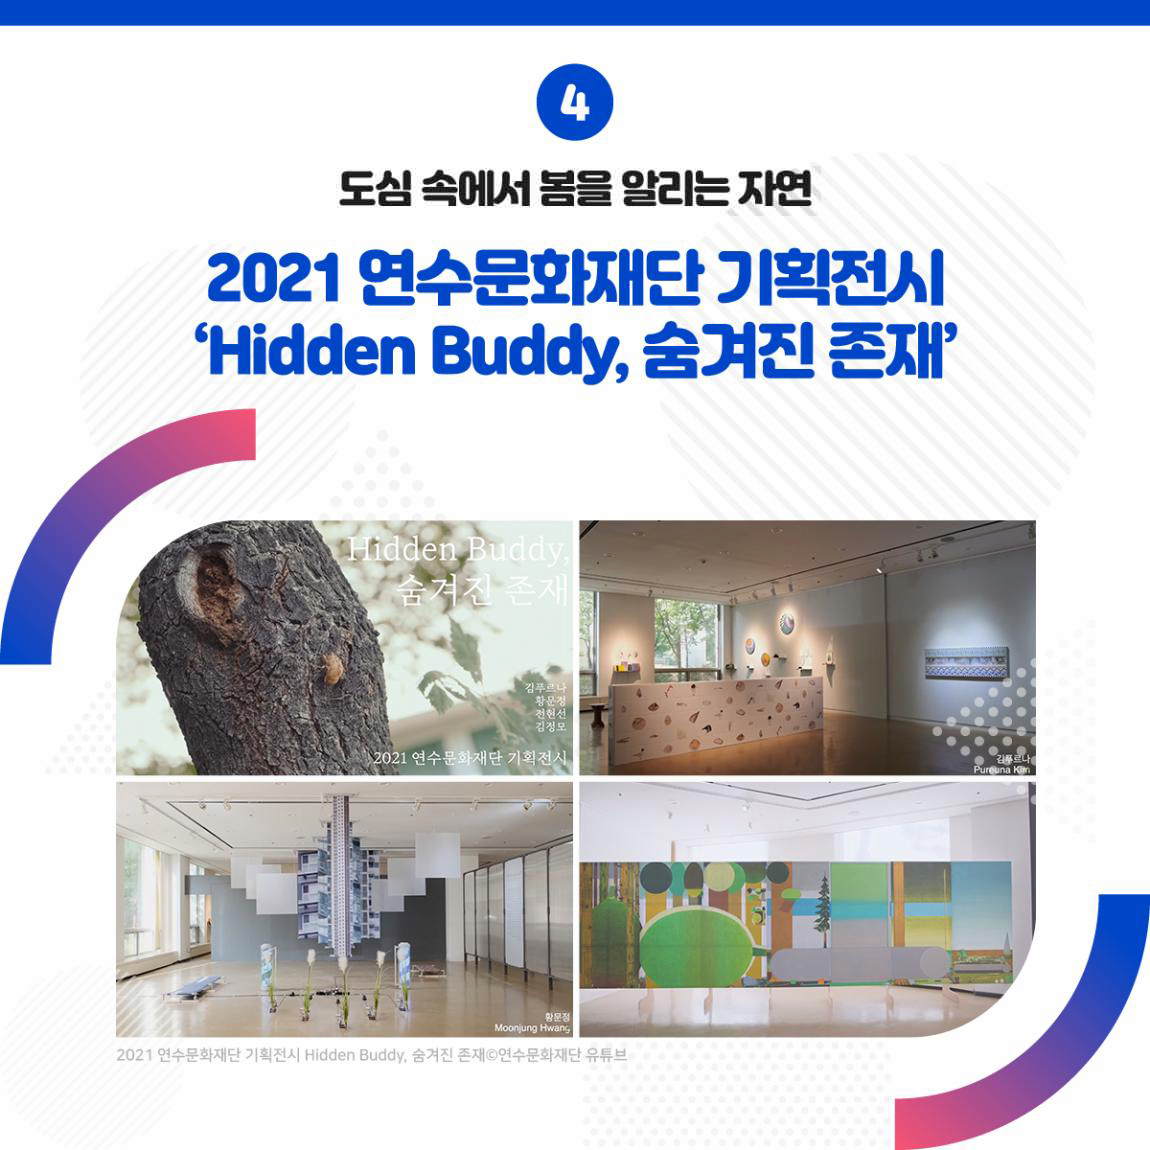 도심 속에서 봄을 알리는 자연 2021 연수문화재단 기획전시 Hidden Buddy, 숨겨진 존재 출처 연수문화재단 유튜브 2021년 연수문화재단 기획전시  Hidden Buddy, 숨겨진 존재